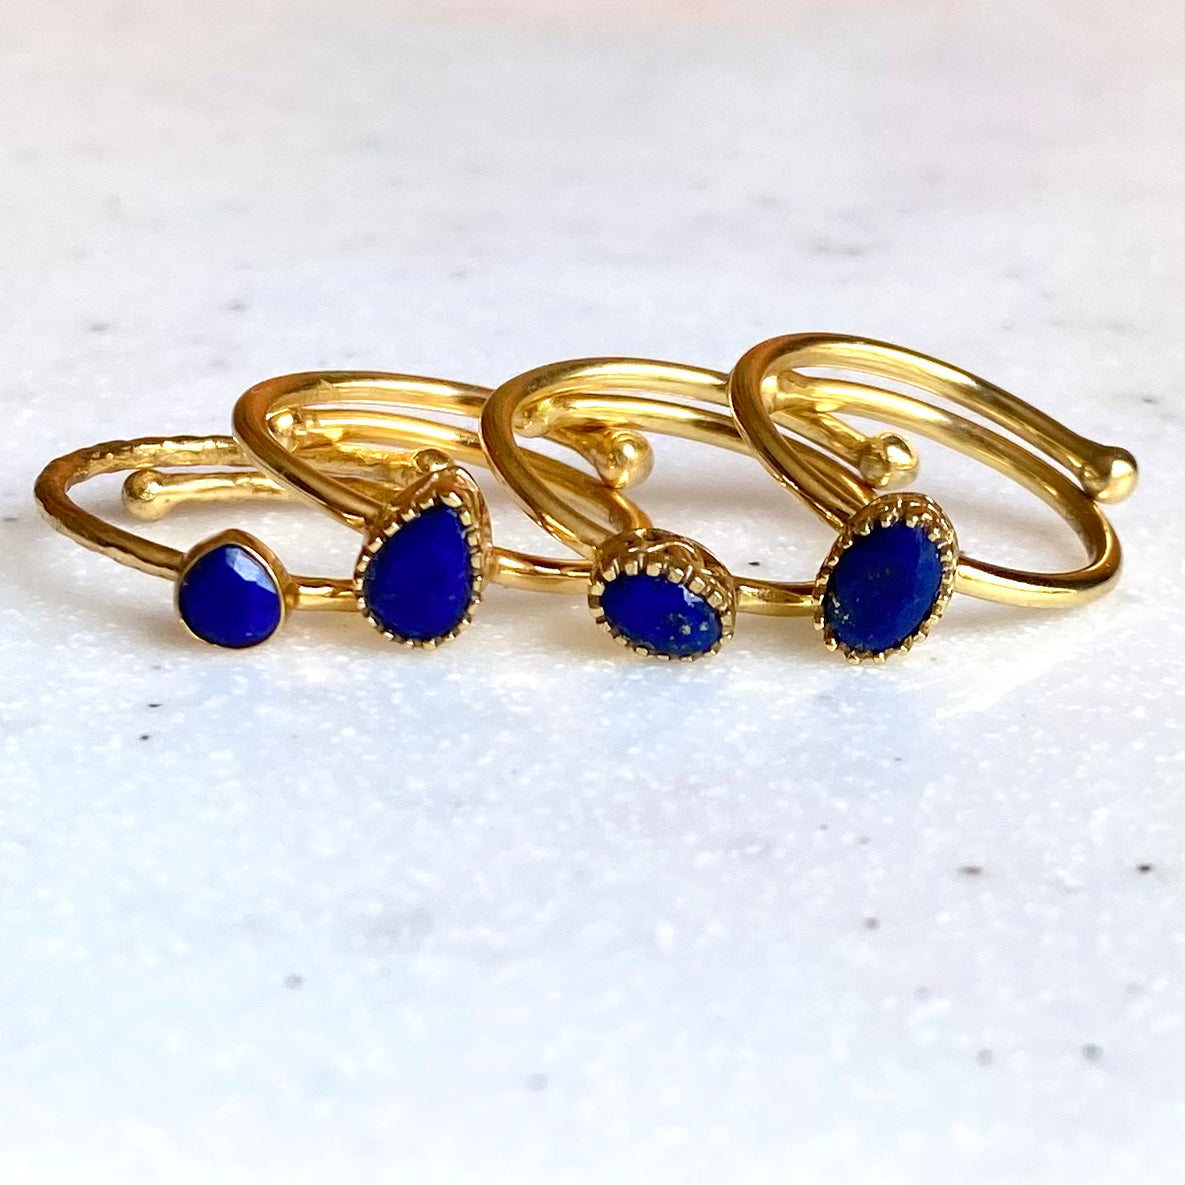 Brass petit ring〈blue2〉